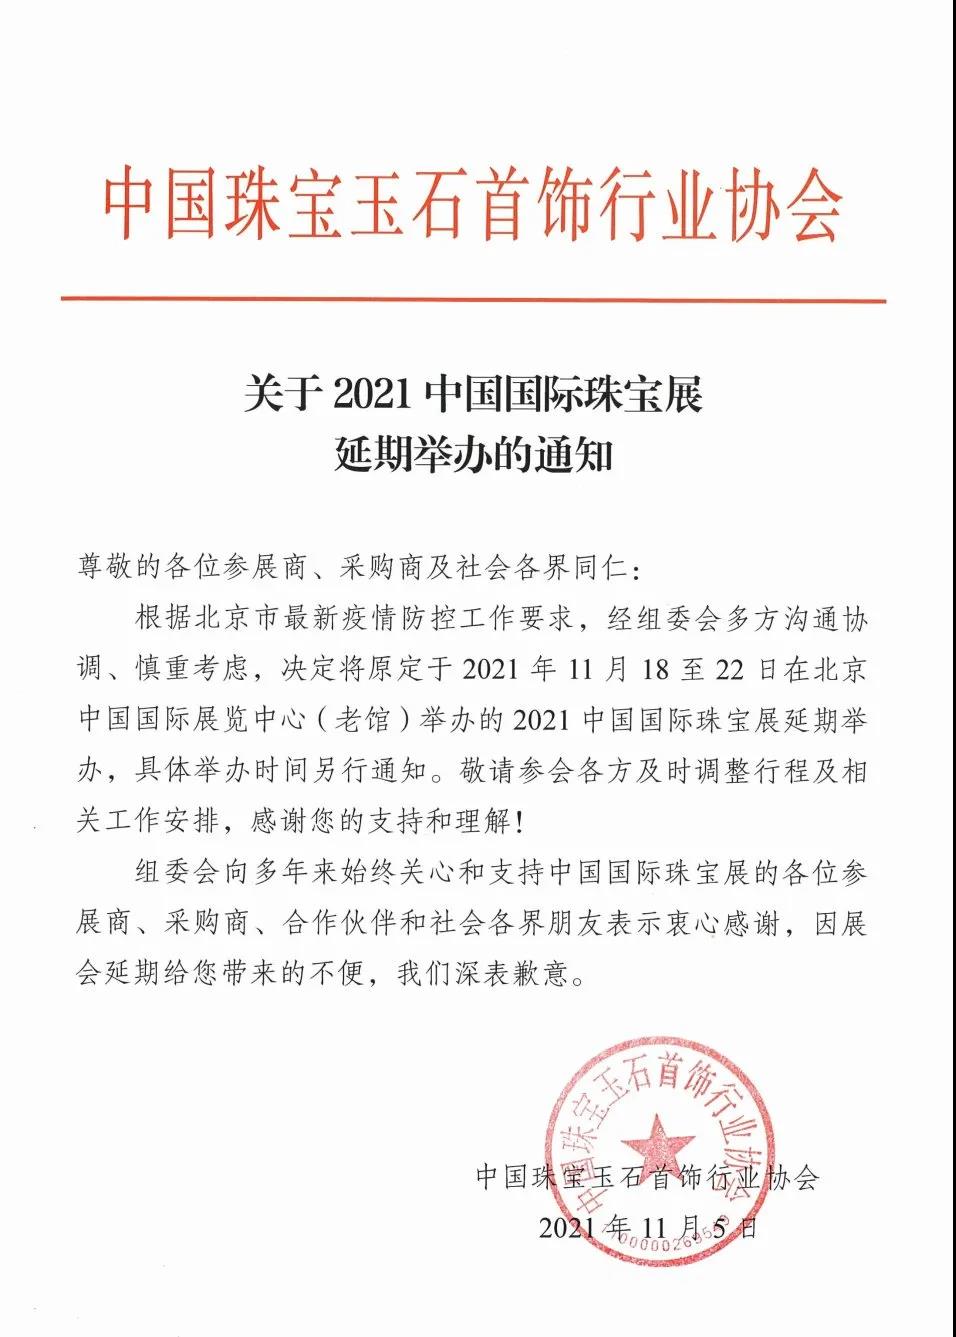 关于2021中国国际珠宝展延期举办的通知.jpg